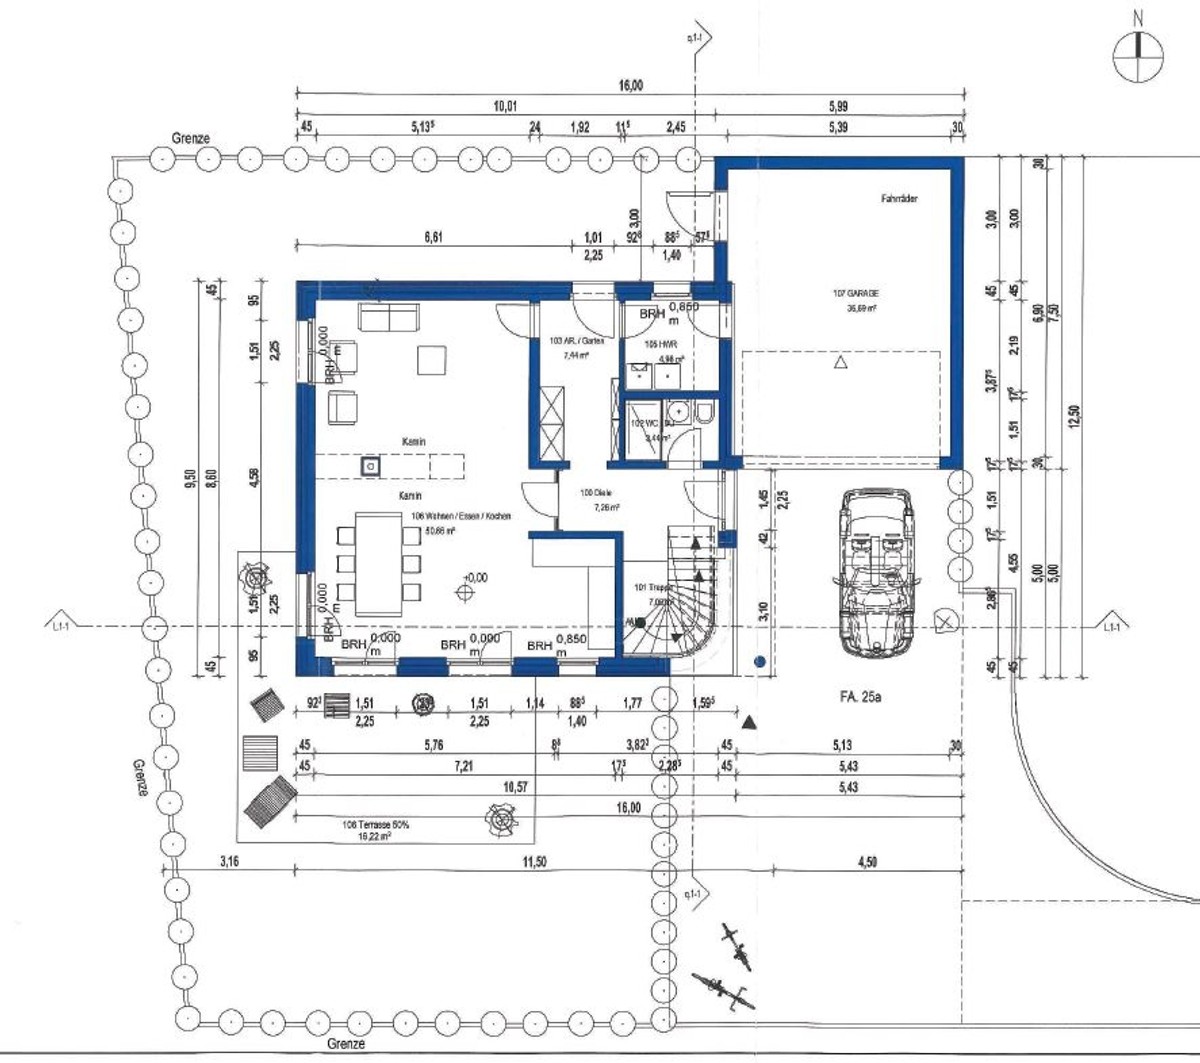 Erdgeschoss - Planungsvorschlag 
				